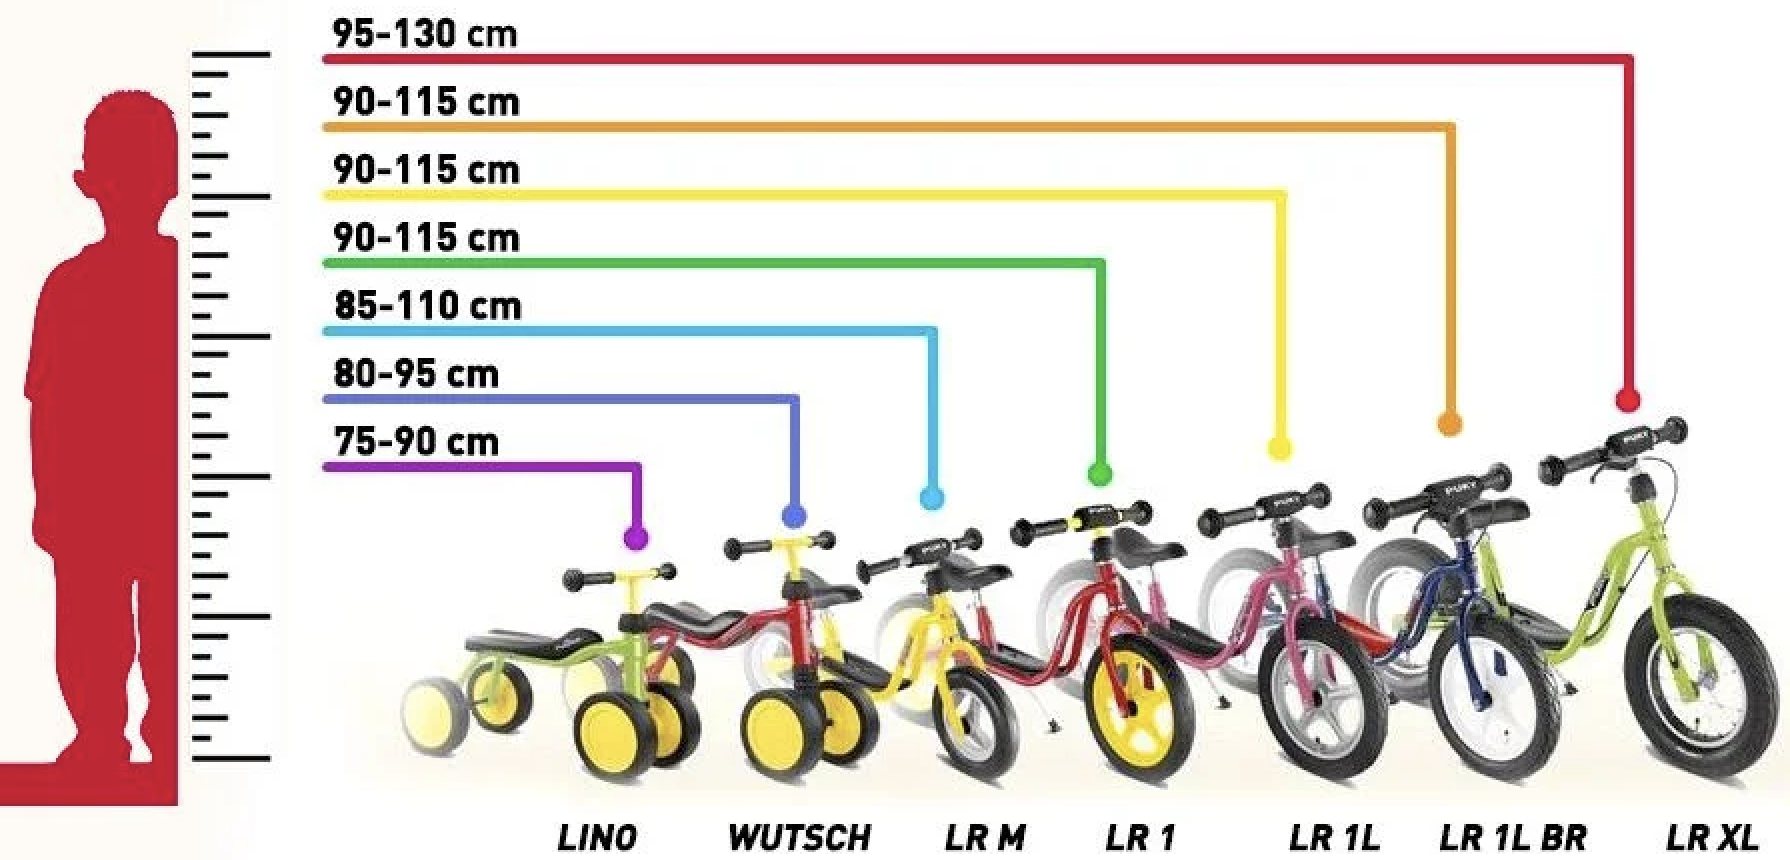 20 дюймов на какой возраст. Puky беговелы таблица рост. Подобрать детский велосипед. Детские велосипеды по росту. Выбор детского велосипеда.